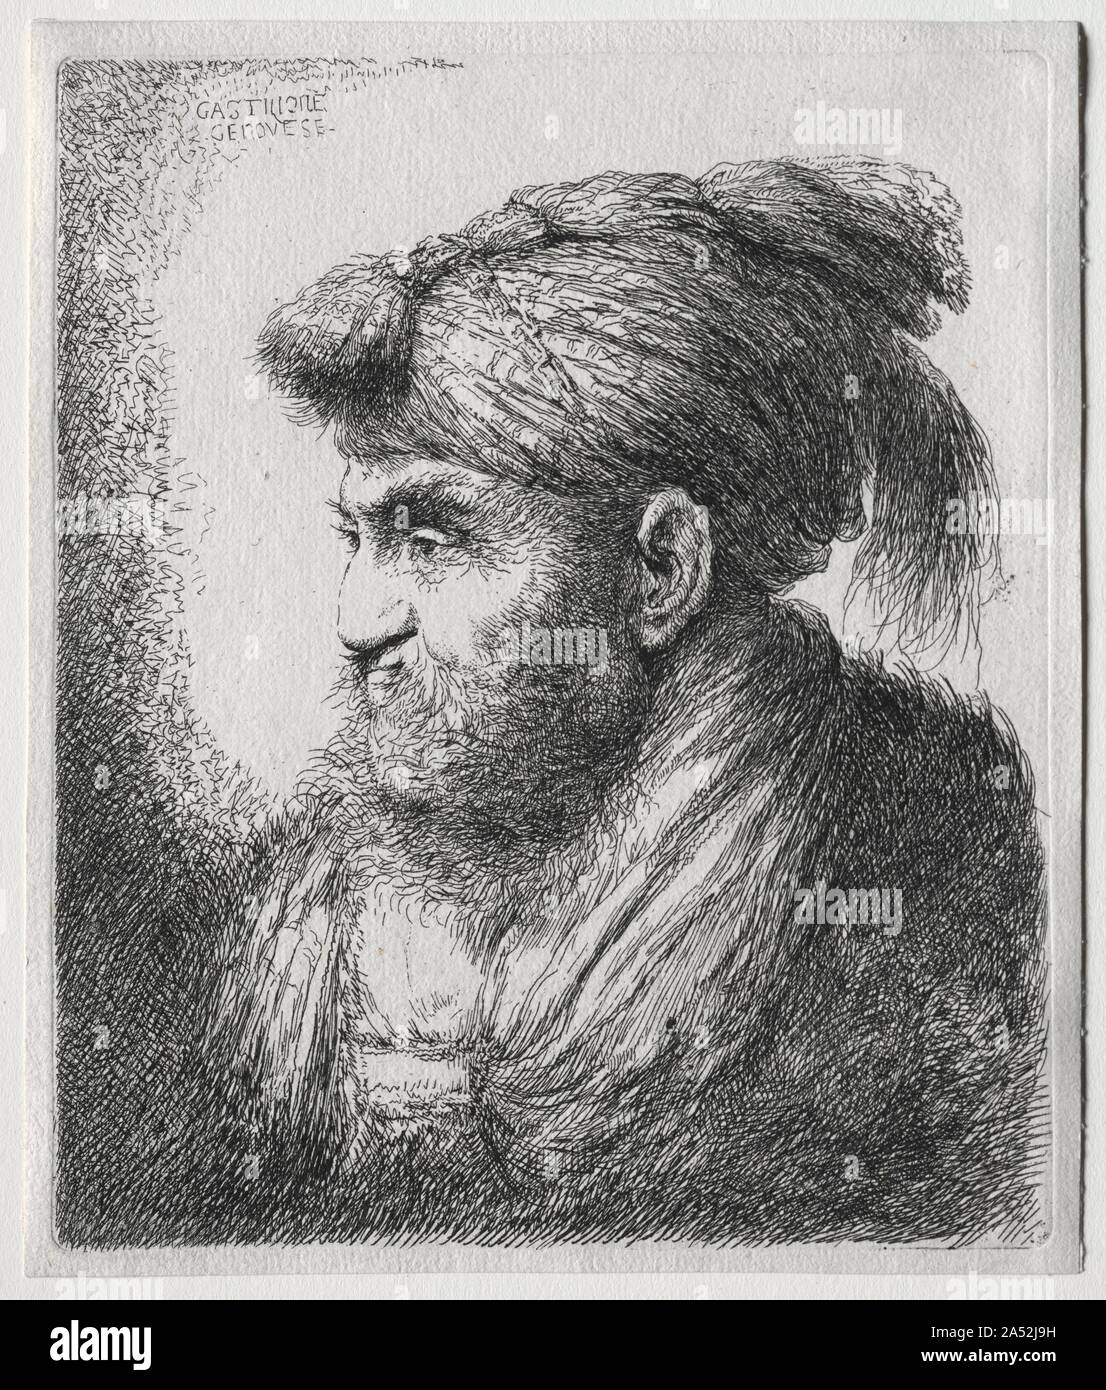 Die großen Köpfe der Männer in Orientalische Kopfbedeckung: ein Mann fast  im Profil und drehte sich nach links Stockfotografie - Alamy